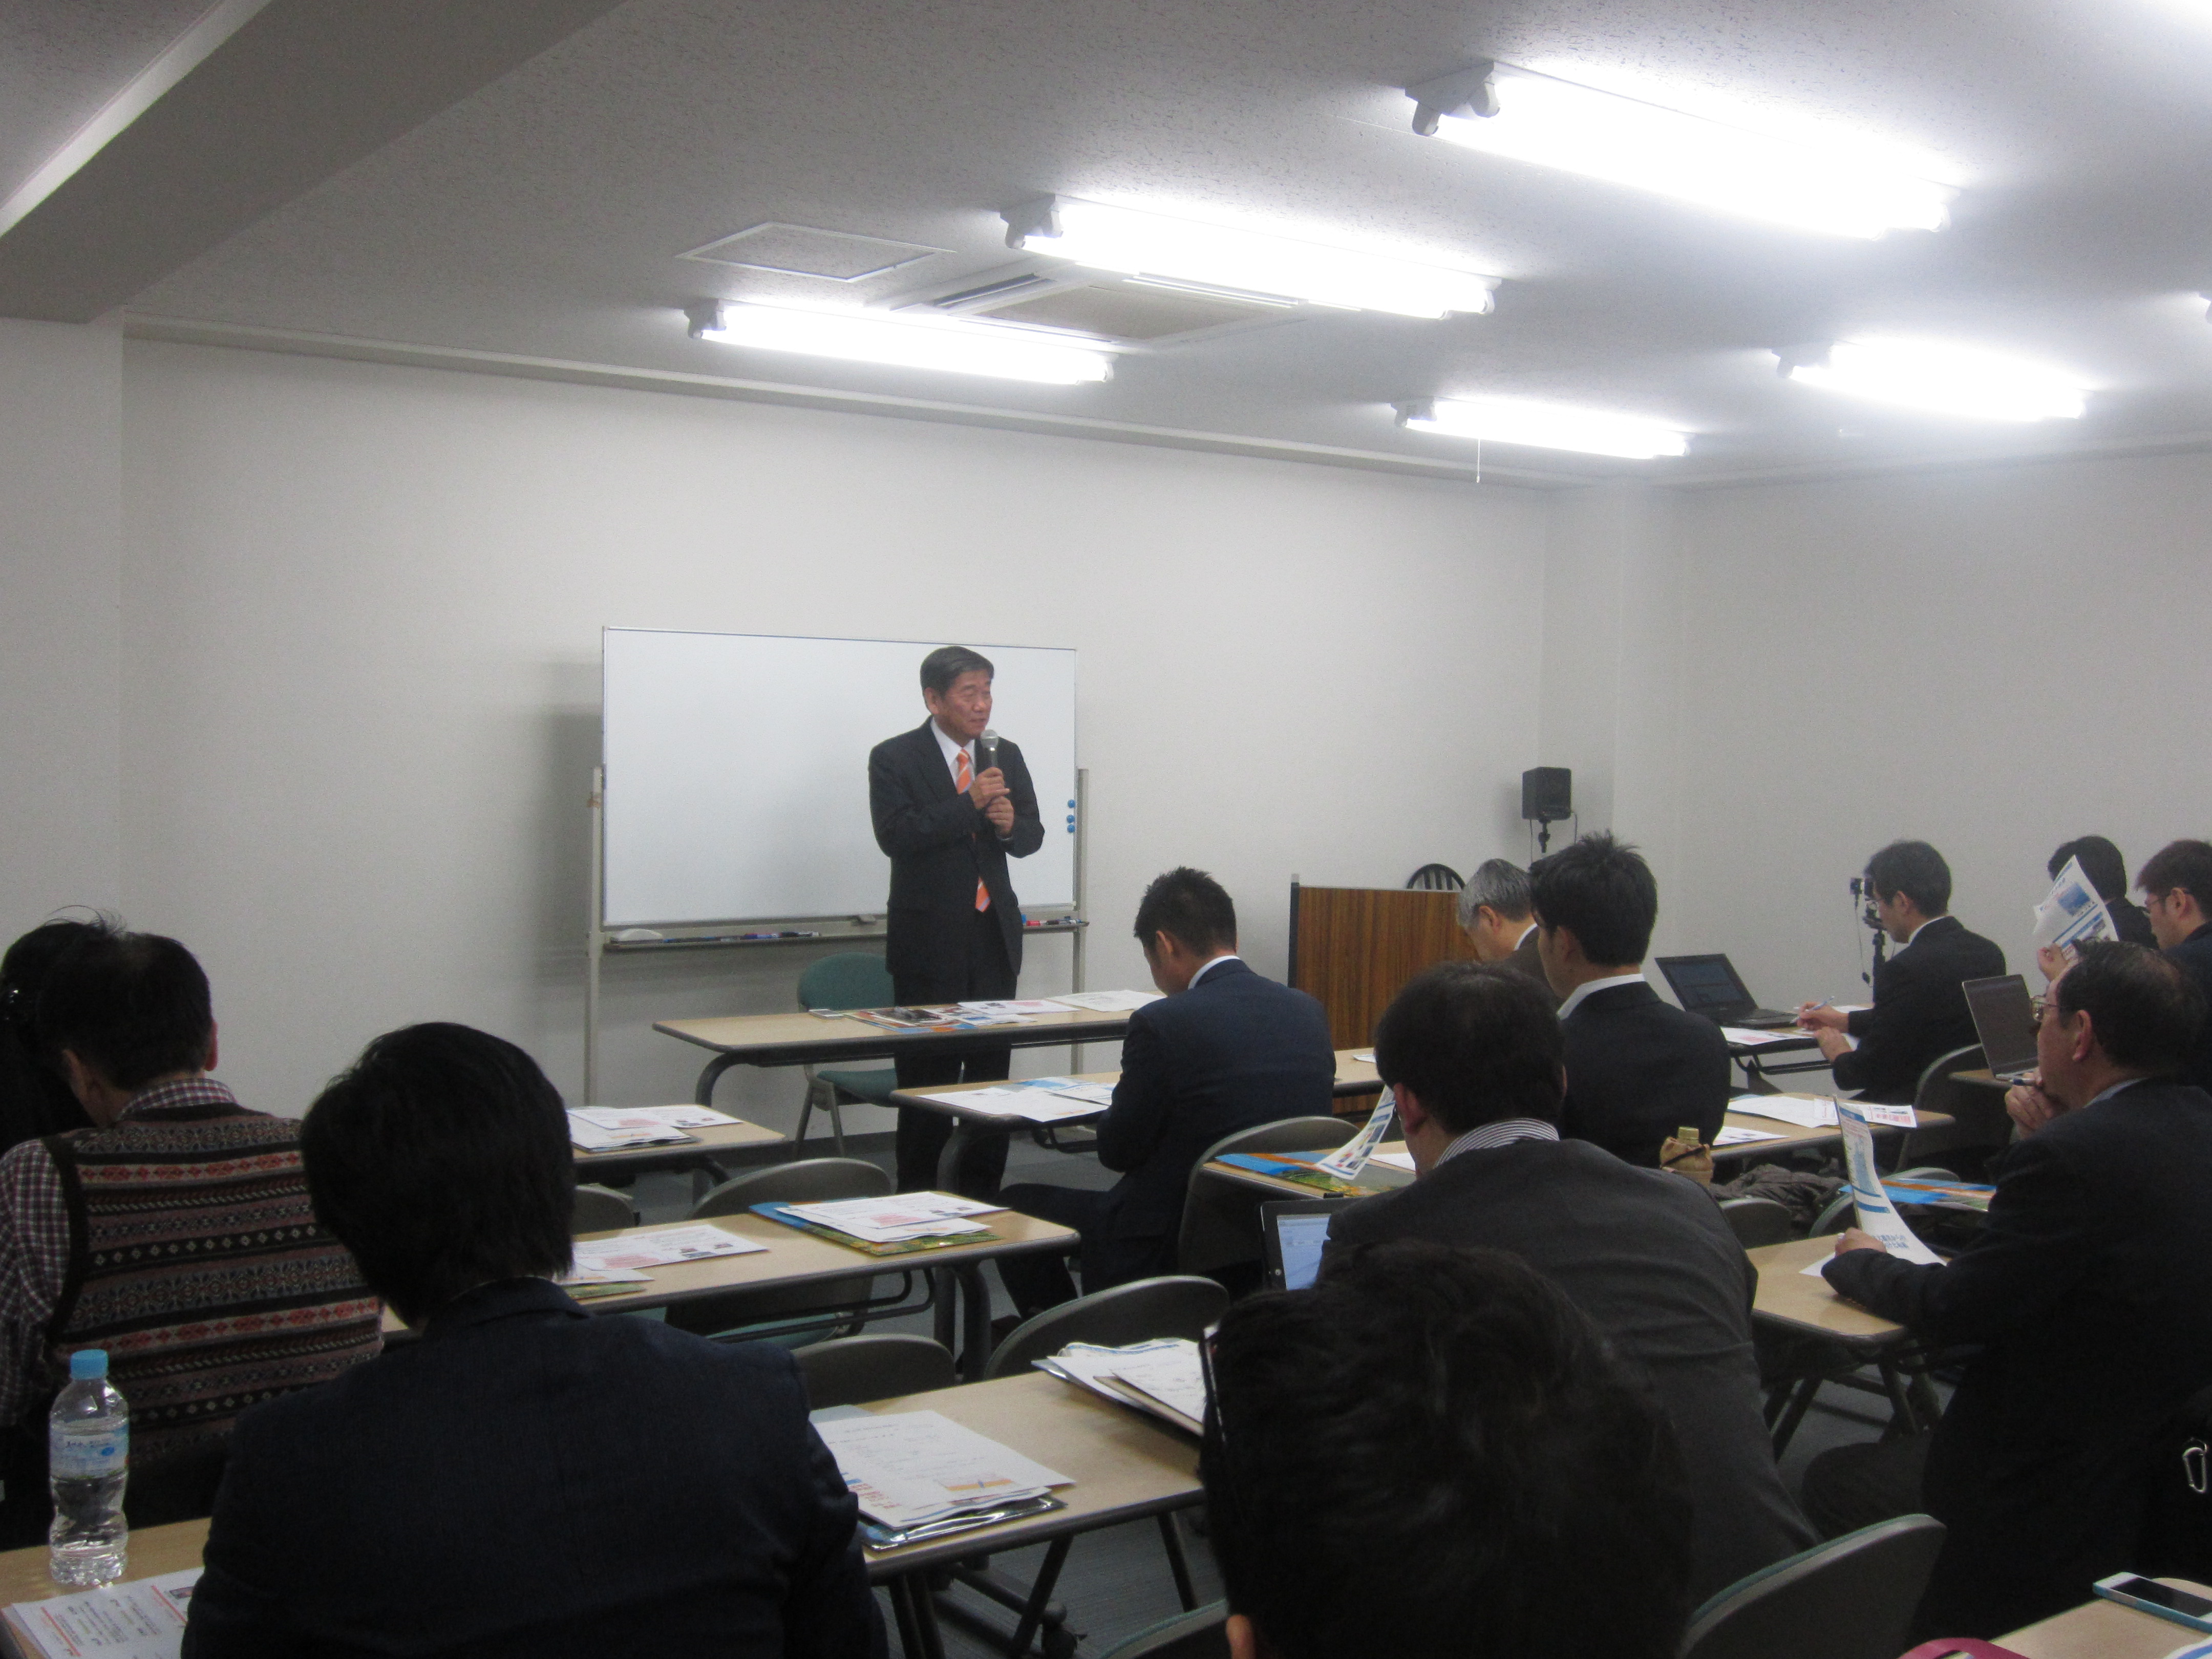 IMG 1900 - 2012年11月27日AOsuki第4回勉強会八戸市小林市長